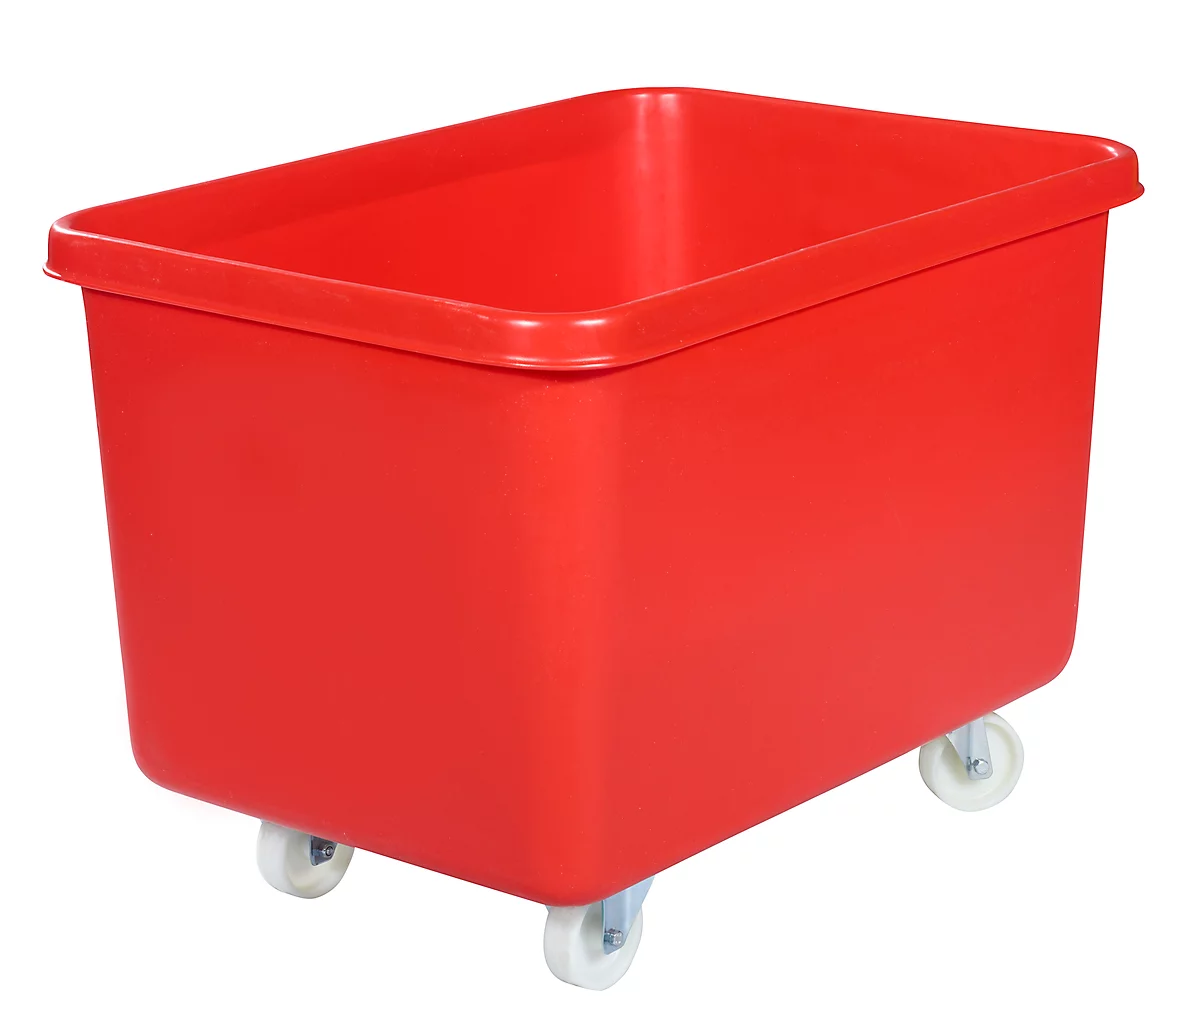 Rechteckbehälter, Kunststoff, fahrbar, 340 l, rot